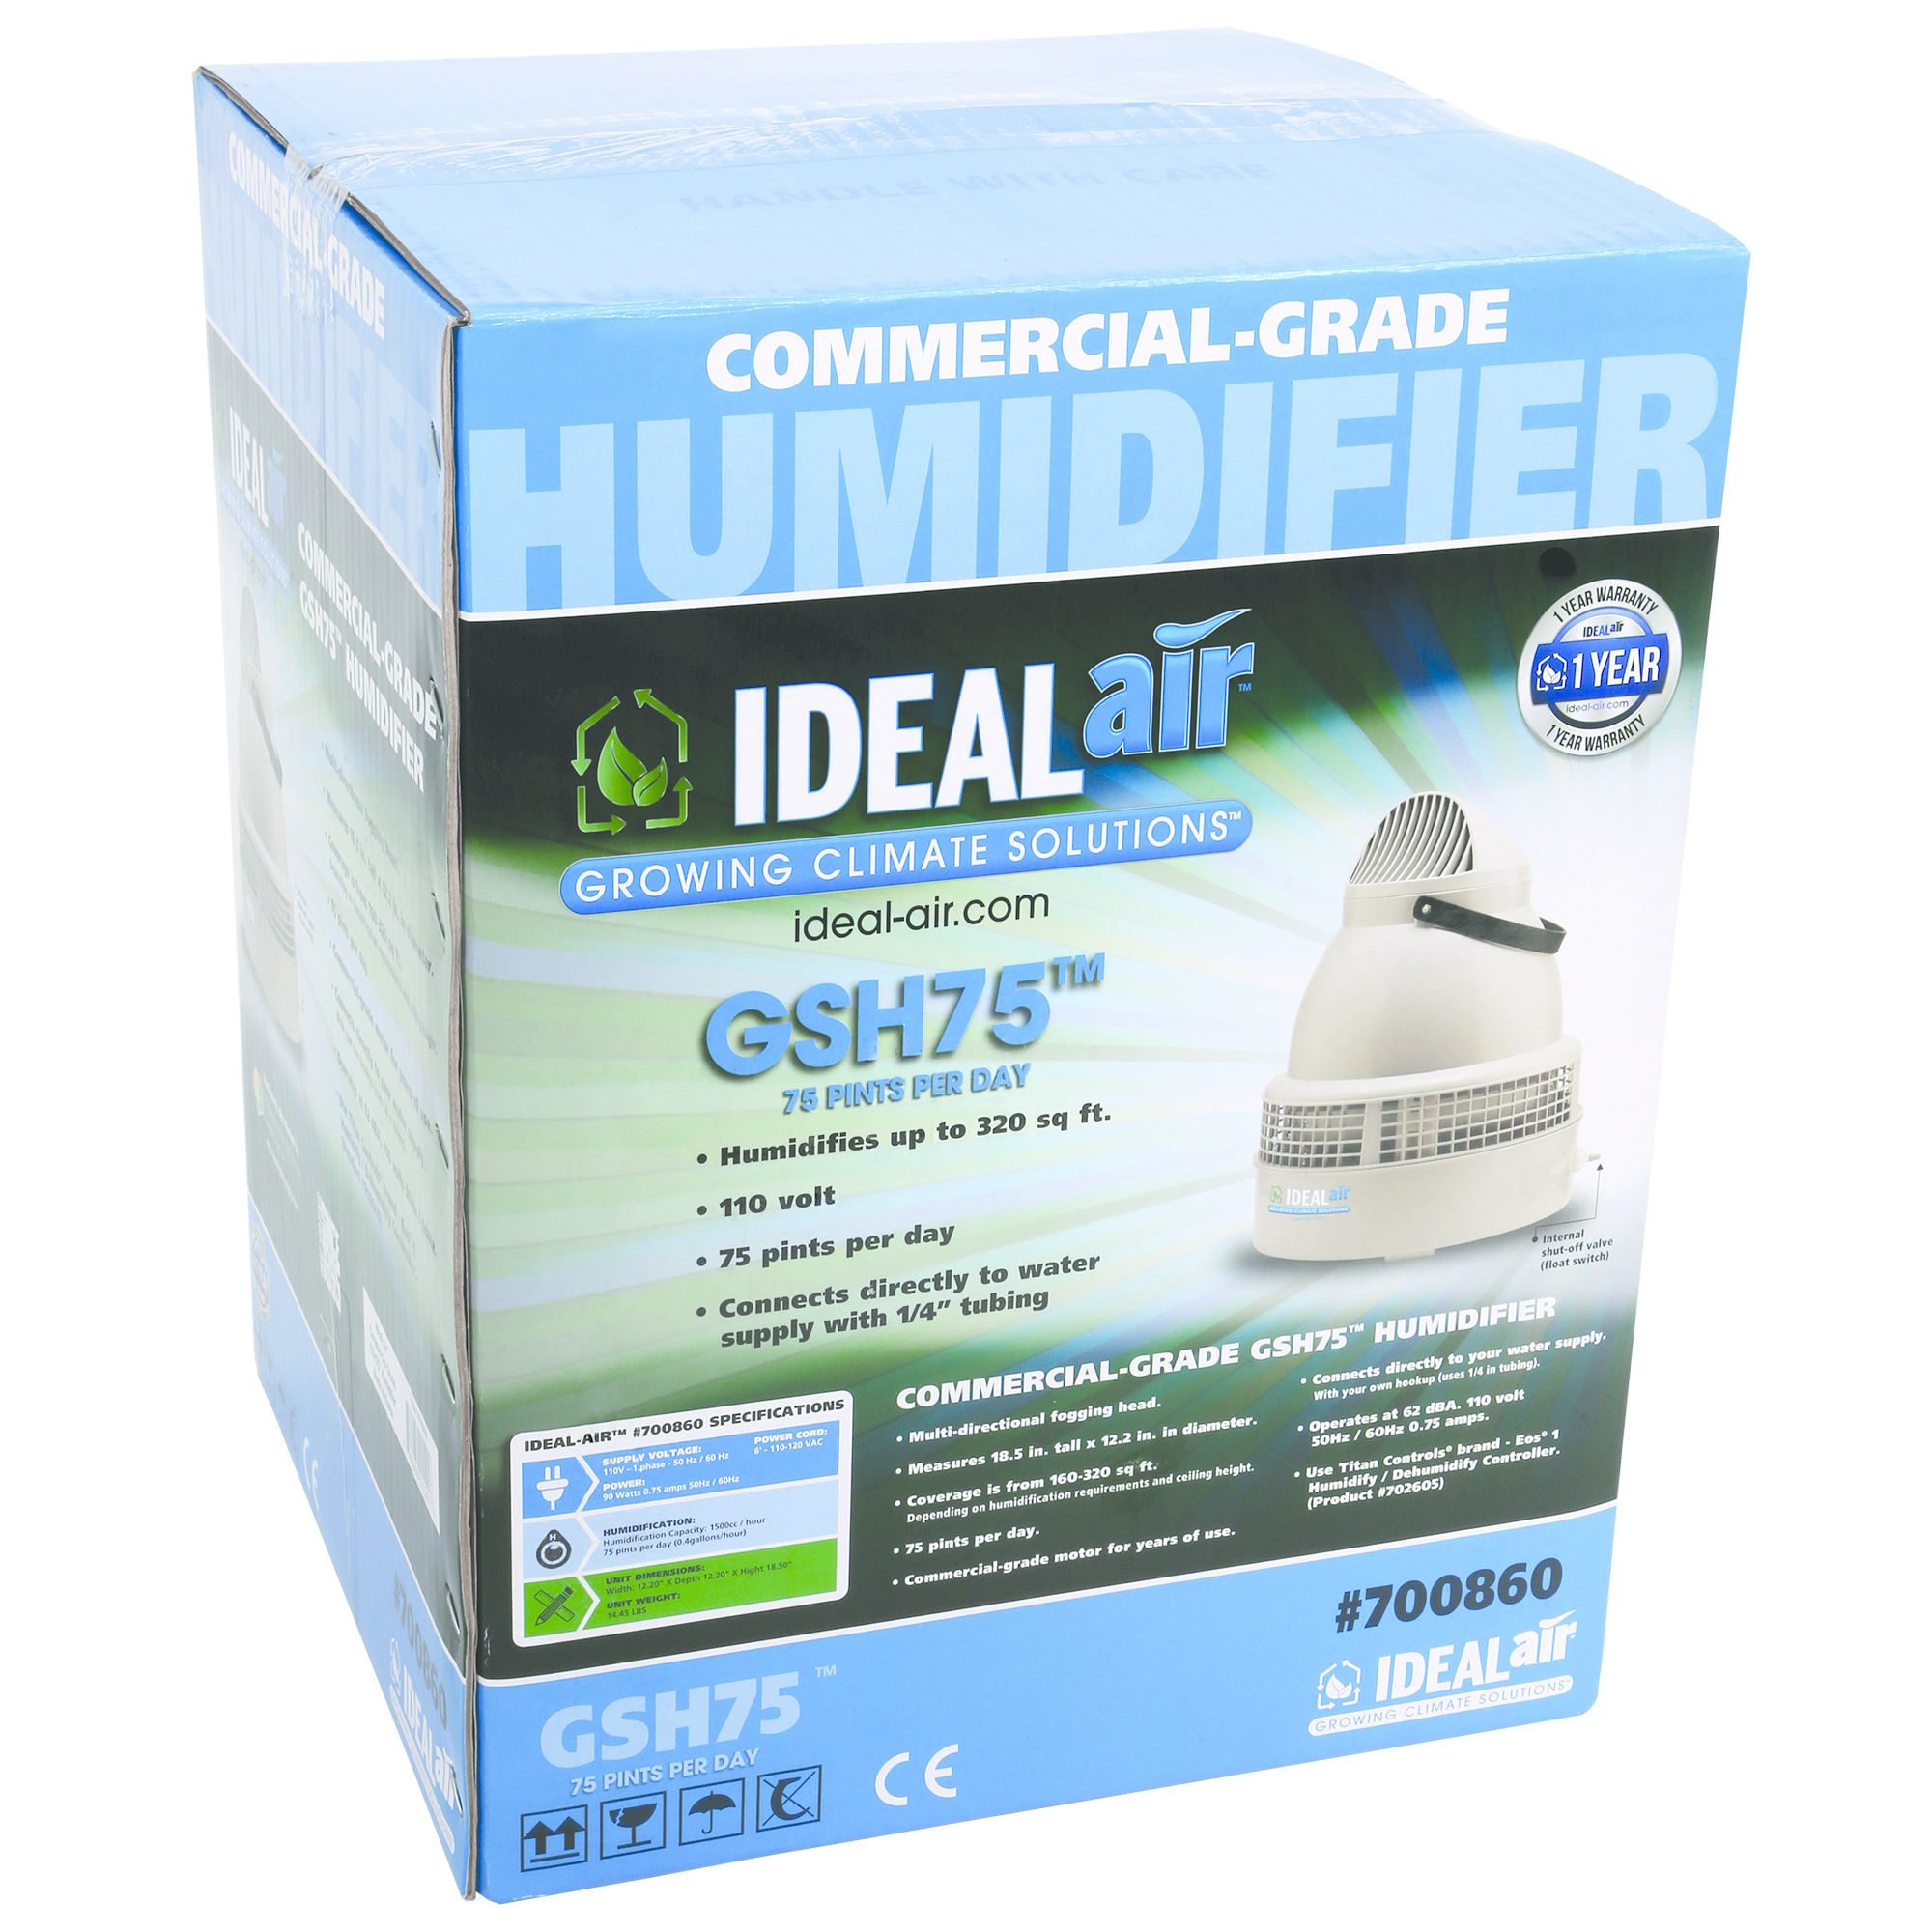 Ideal Air HUMIDIFIER Ideal Air GSH75 (75 pint per day) 110v